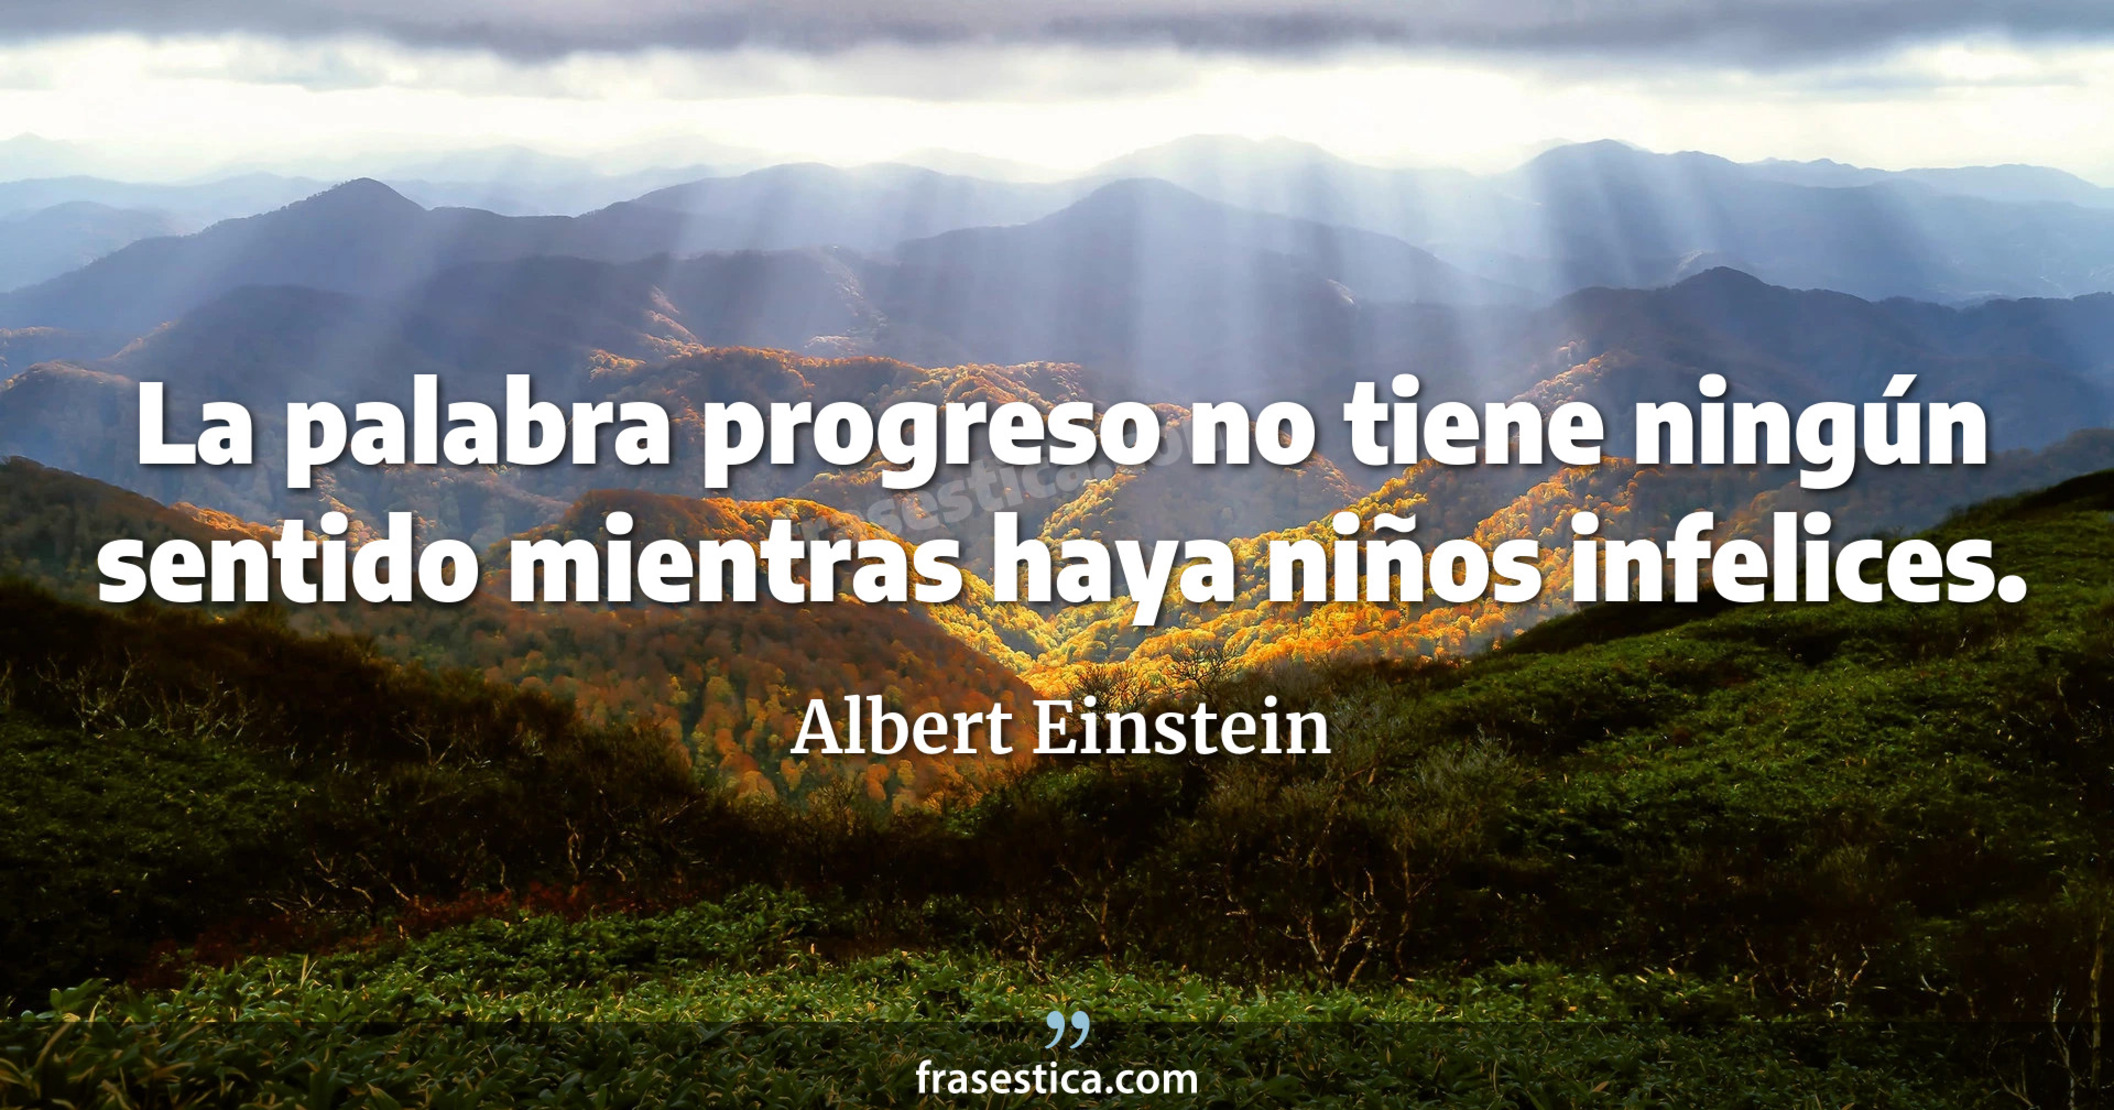 La palabra progreso no tiene ningún sentido mientras haya niños infelices. - Albert Einstein